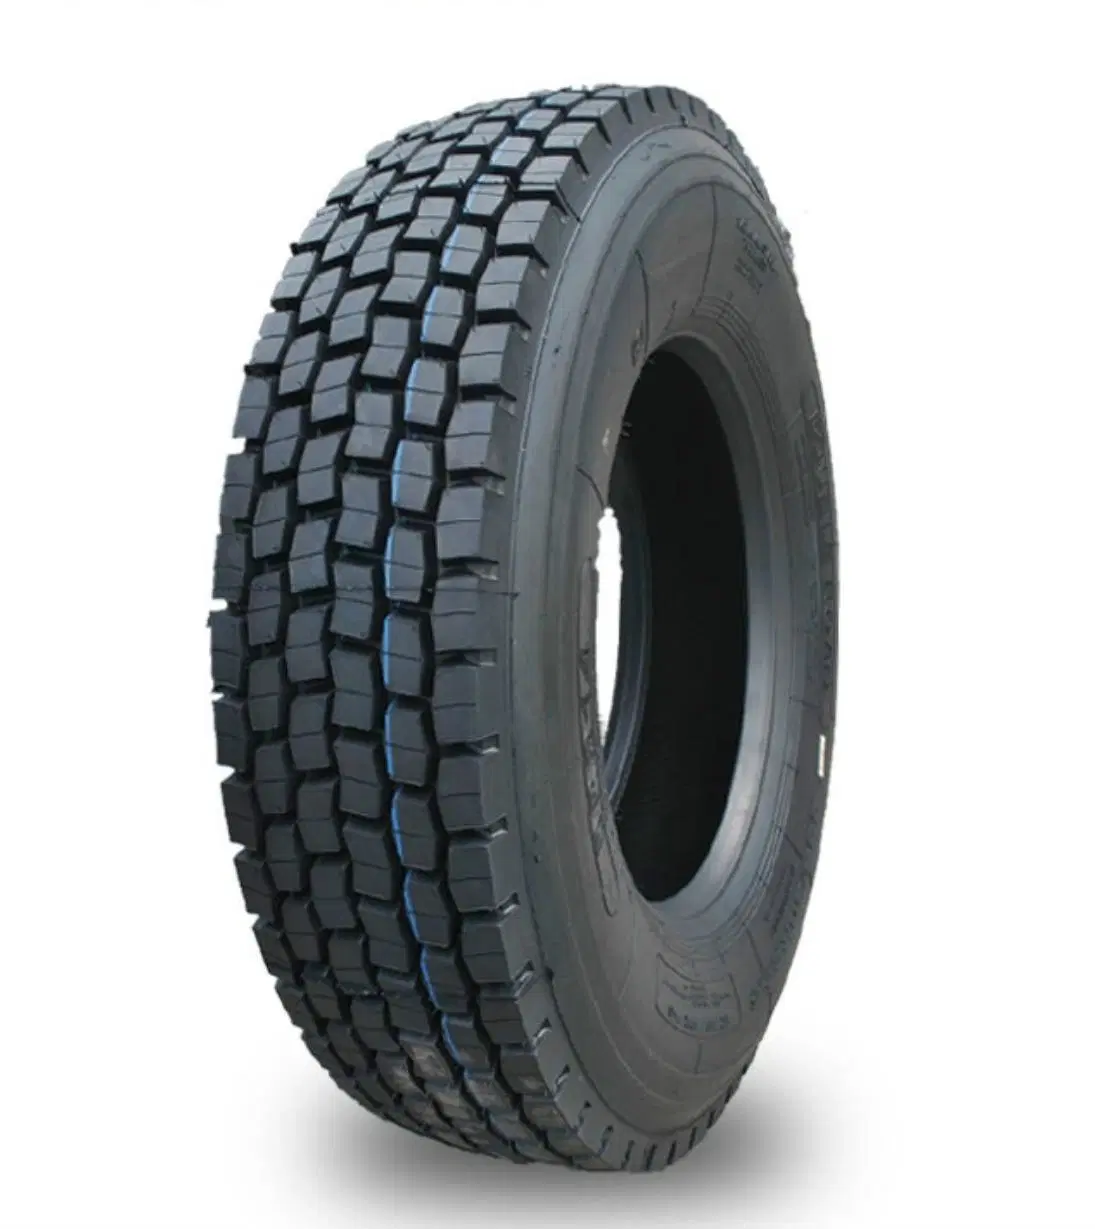 Neumáticos para vehículos/camiones ligeros/SUV para China / neumáticos para camiones ligeros/neumáticos para neumáticos de remolque/radiales (155R13LT, 165R13C, 165/70R13C, 175R13LT, 175R14C, 175/70R14LT, 175/70R14)